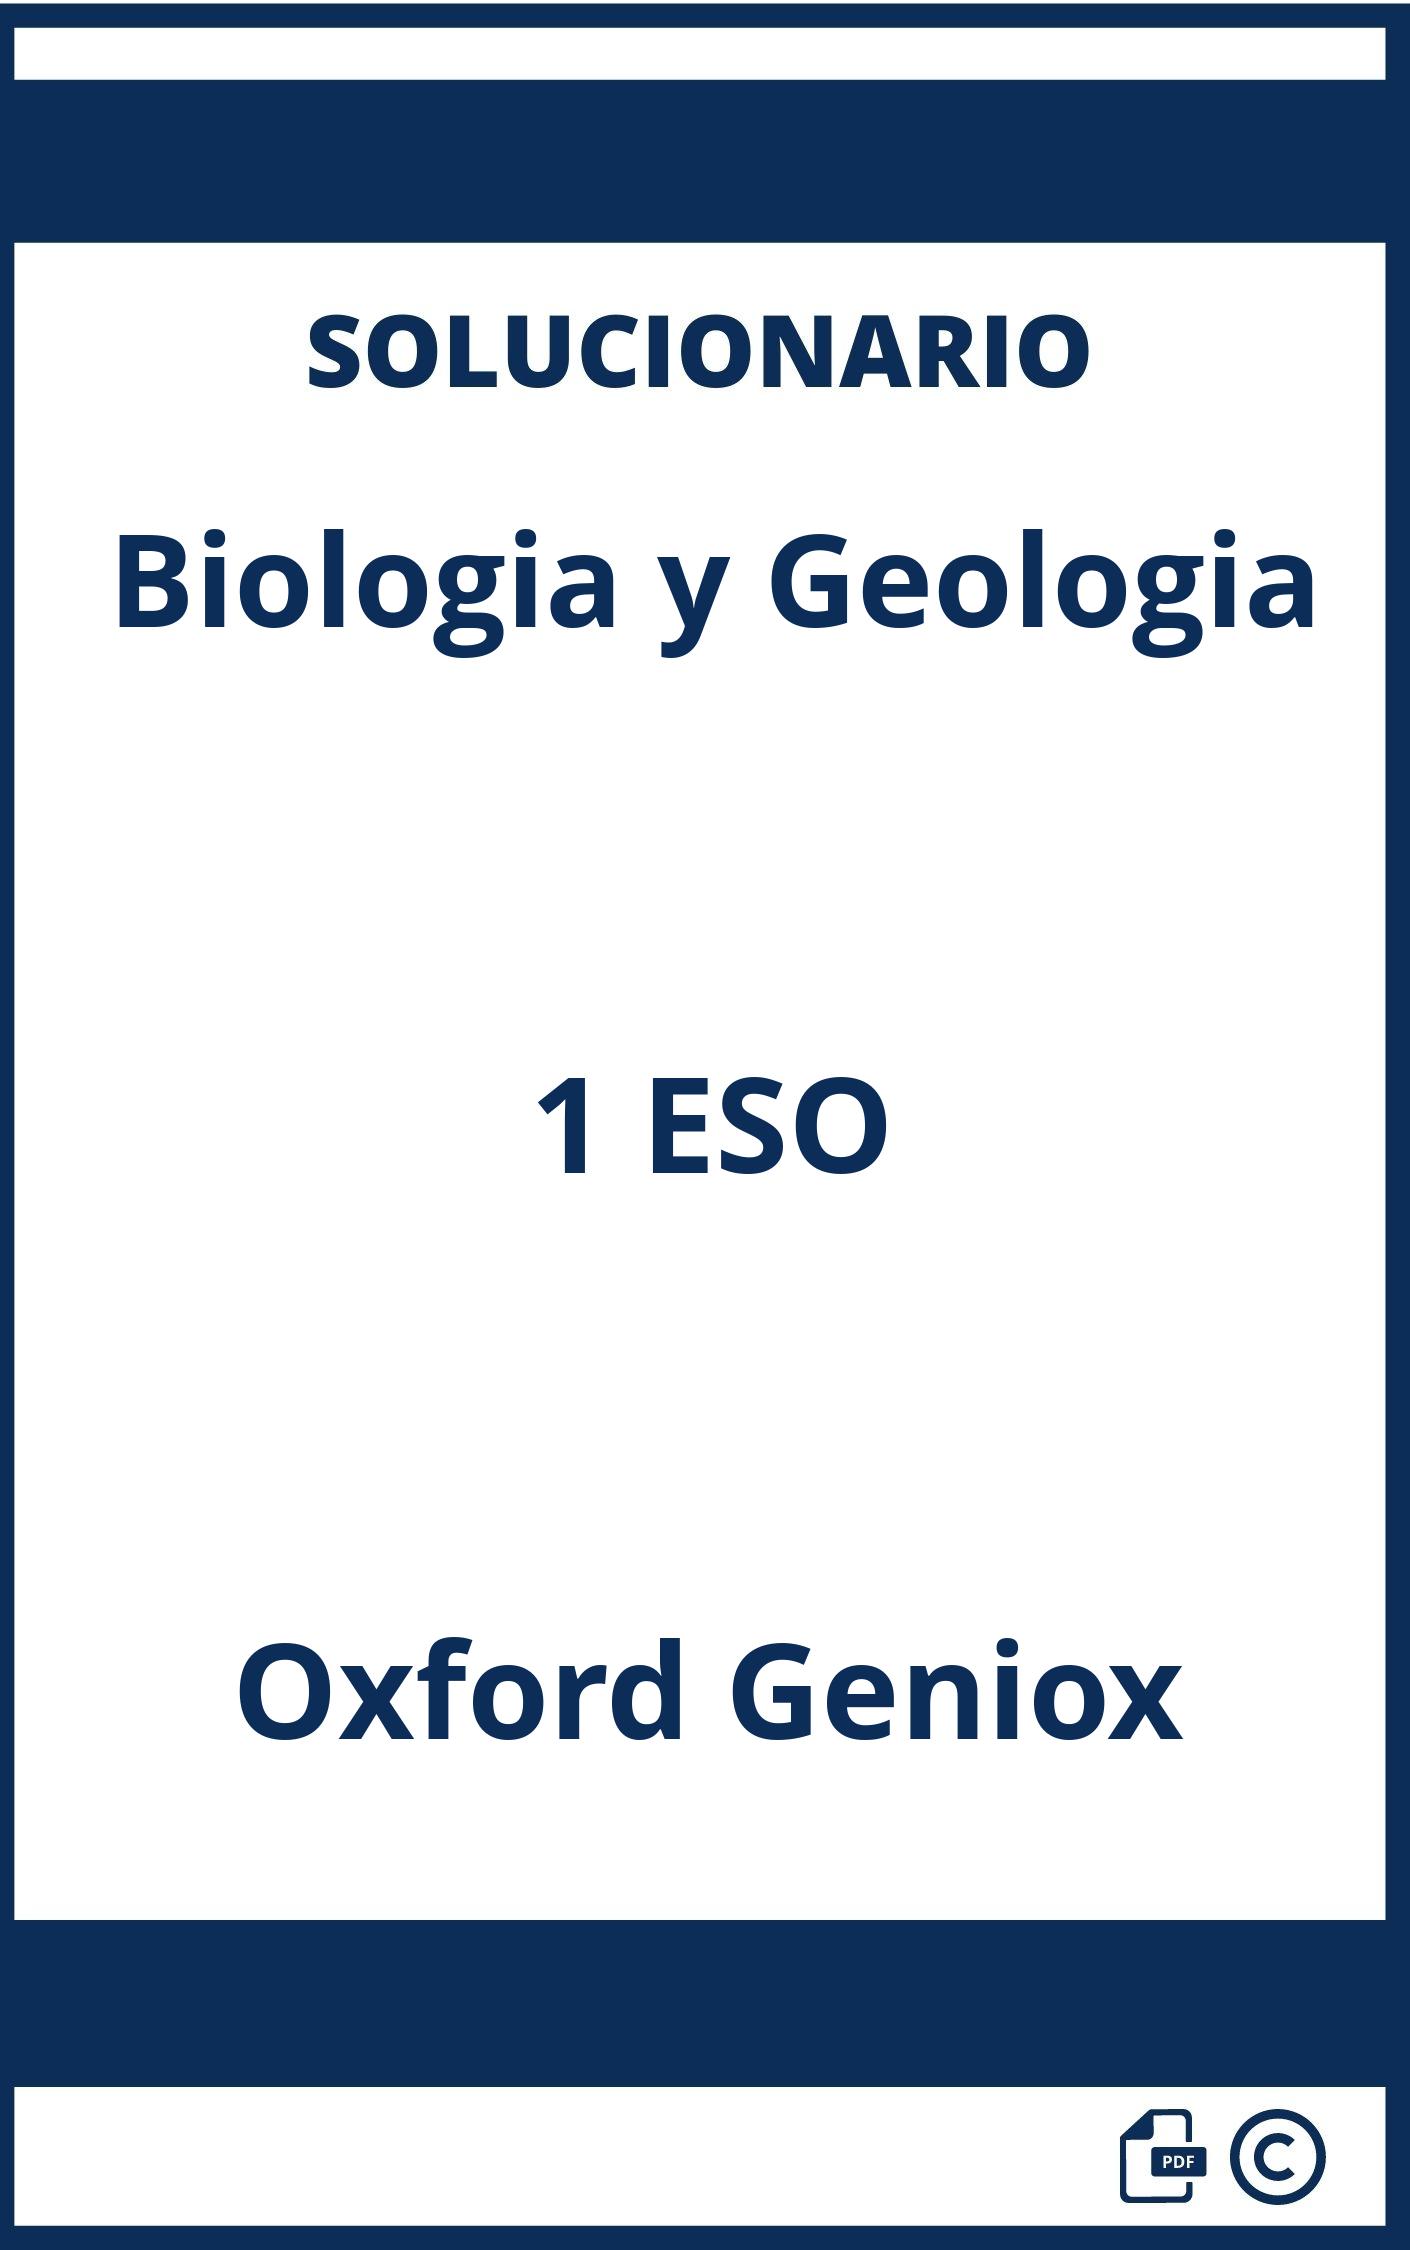 Solucionario Biologia y Geologia 1 ESO Oxford Geniox